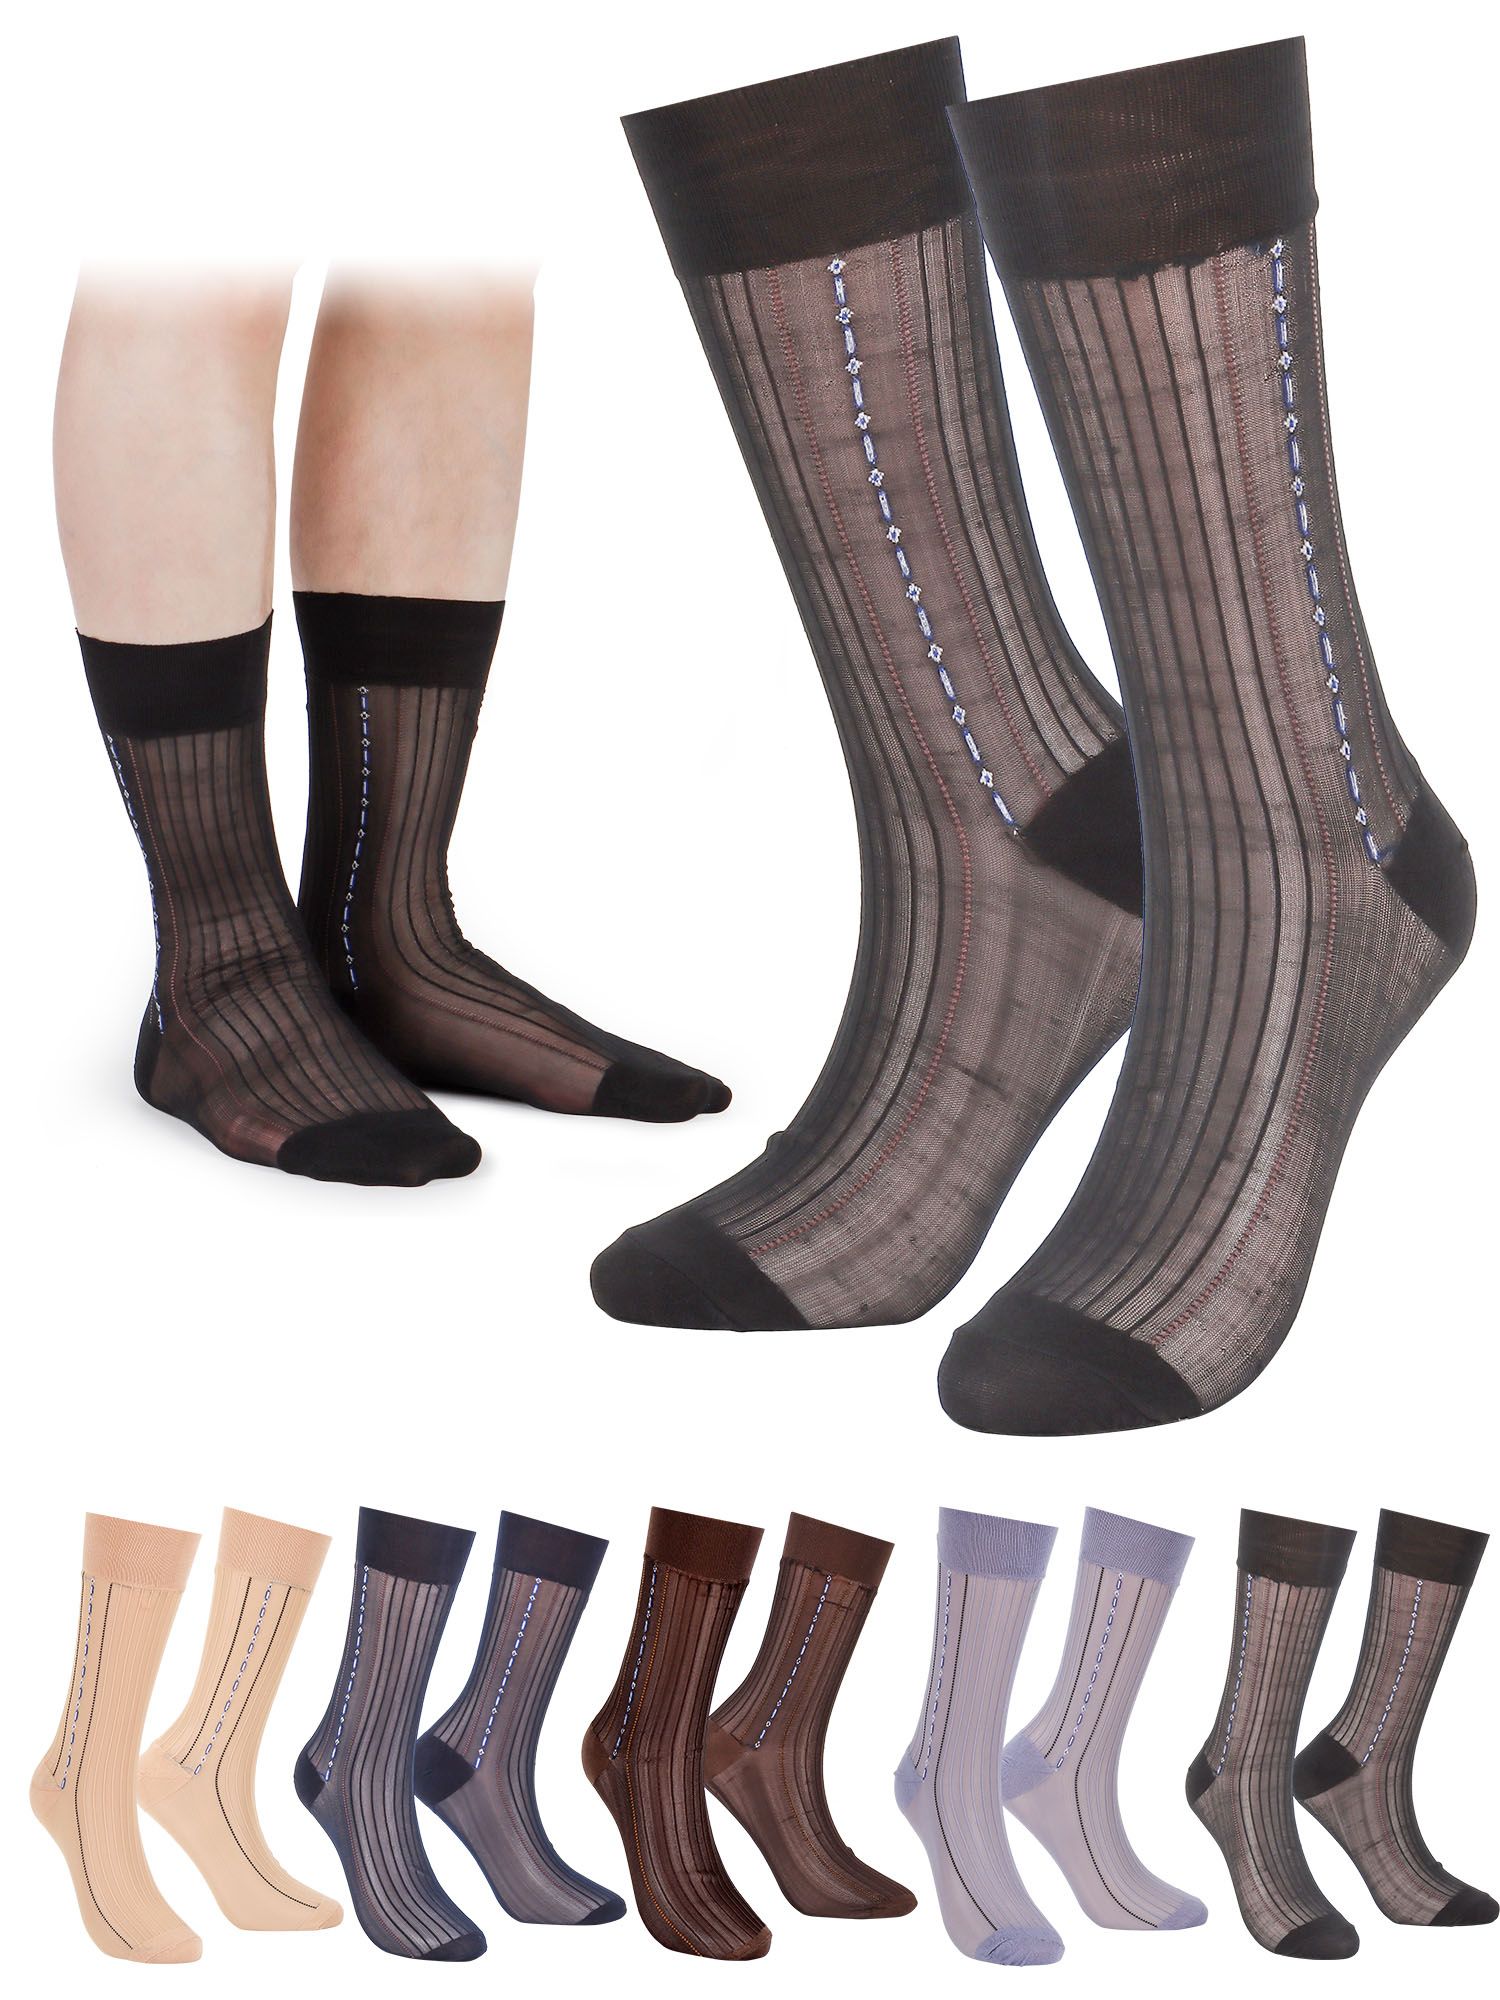 Spencer Mens Silk Sheer Nylon Dress Socks Ultra Thin Business Striped Socks 5 Pairs